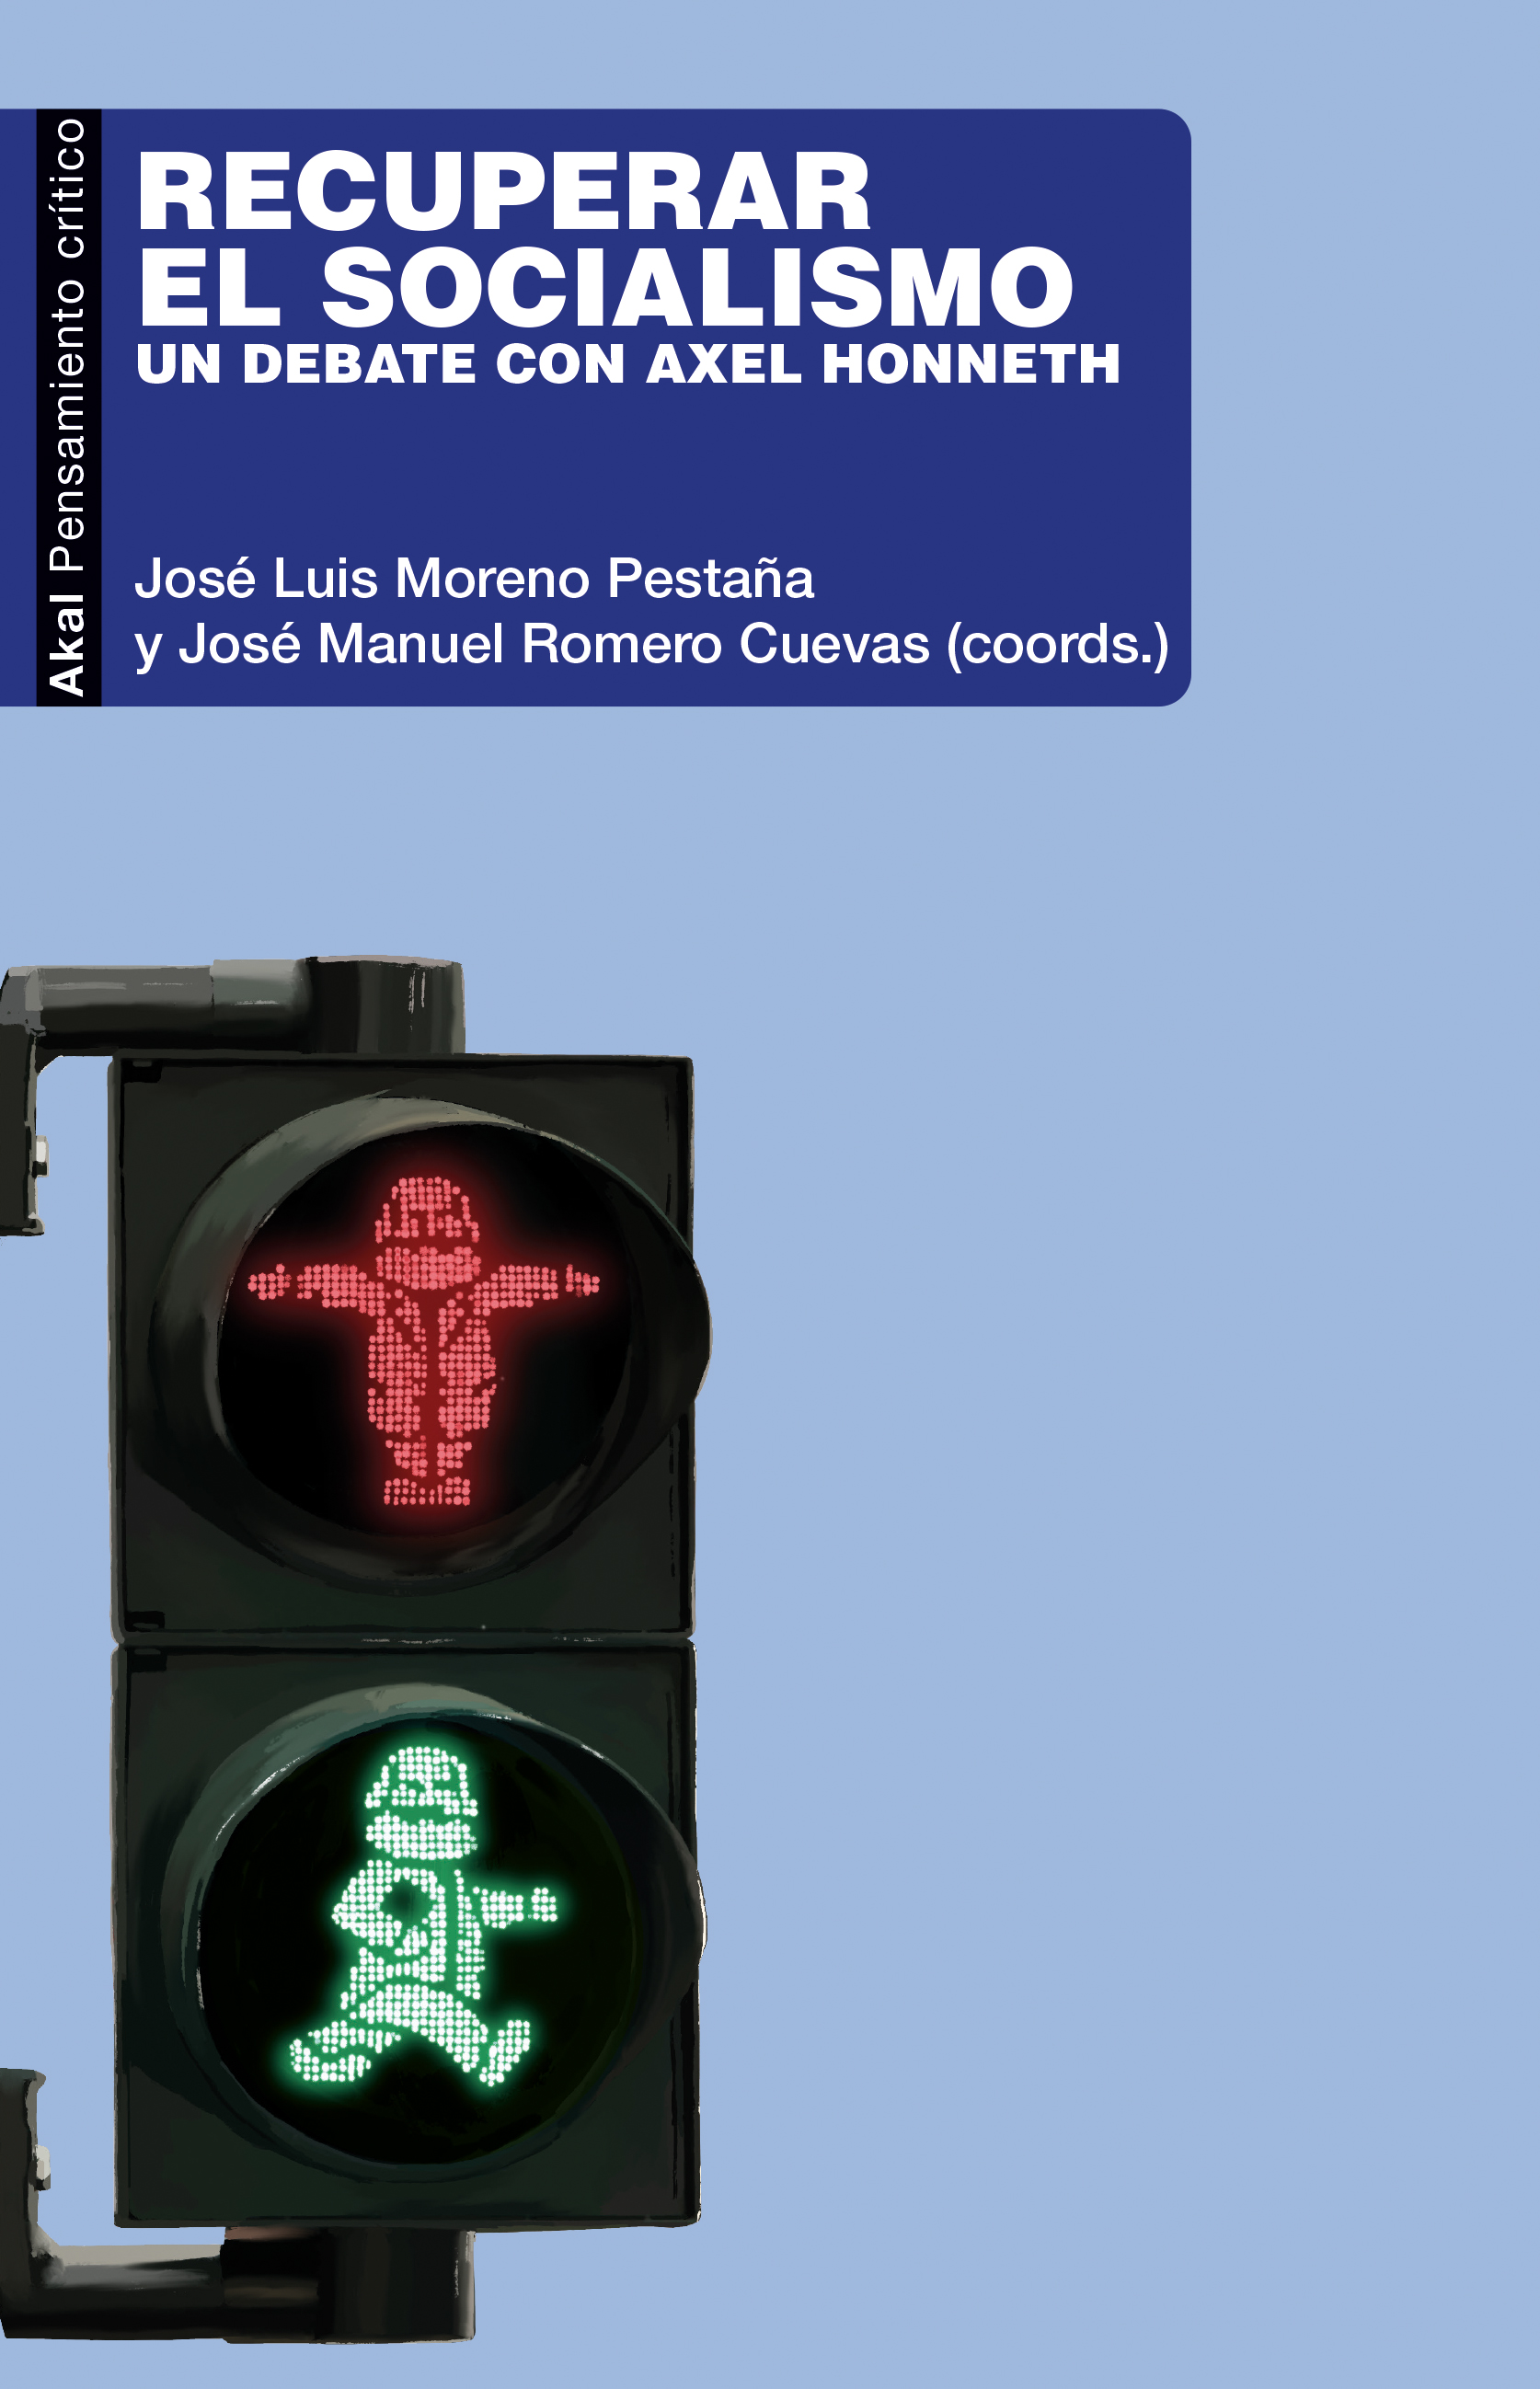 RECUPERAR EL SOCIALISMO - José Manuel Romero Cuevas | José Luis Moreno Pestaña